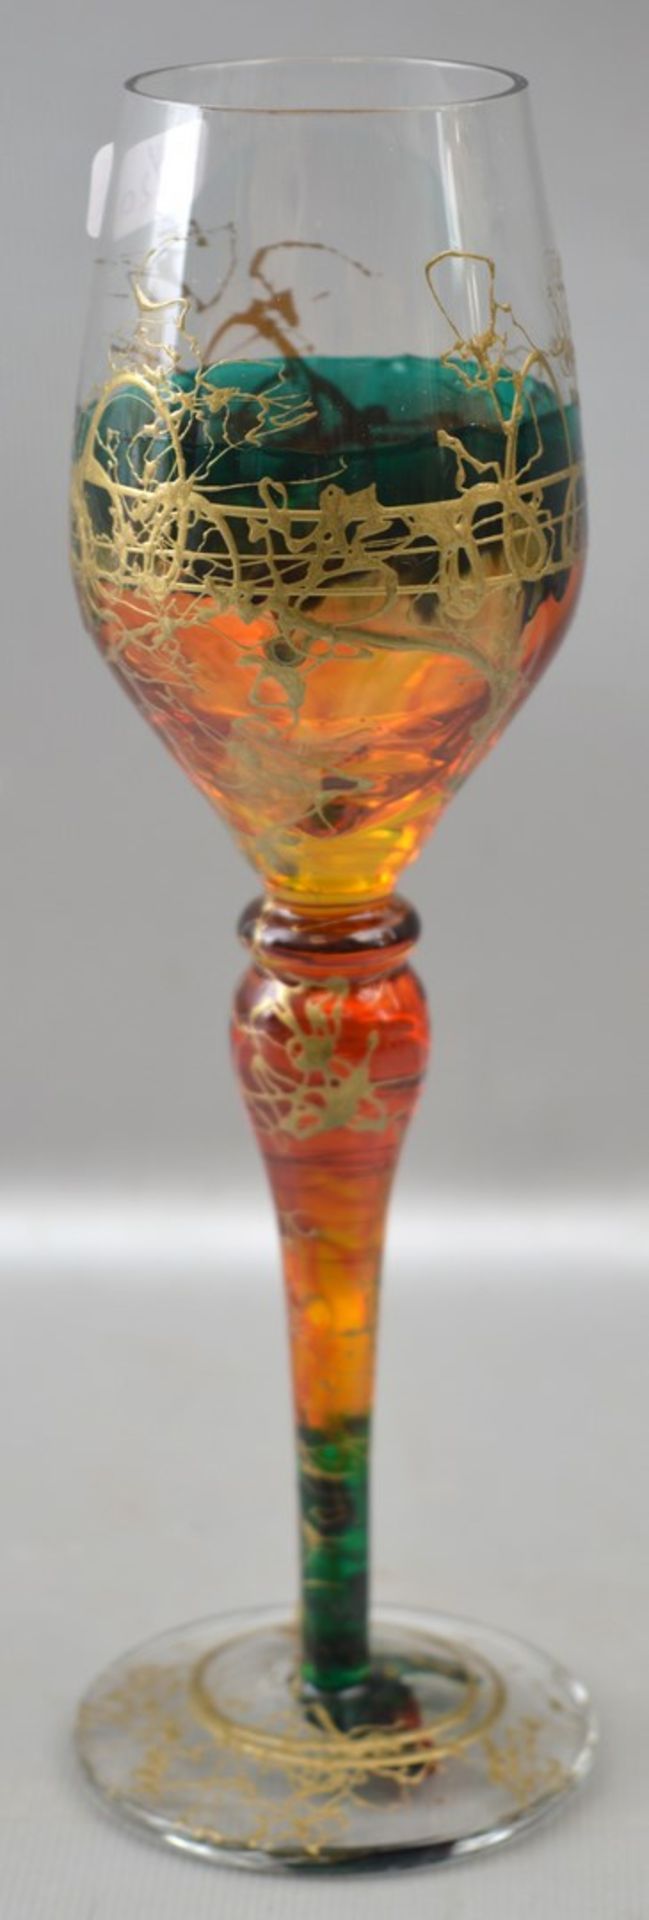 Likörglas farbl. Glas, mit buntem Verlauf, gold verziert, H 19 cm